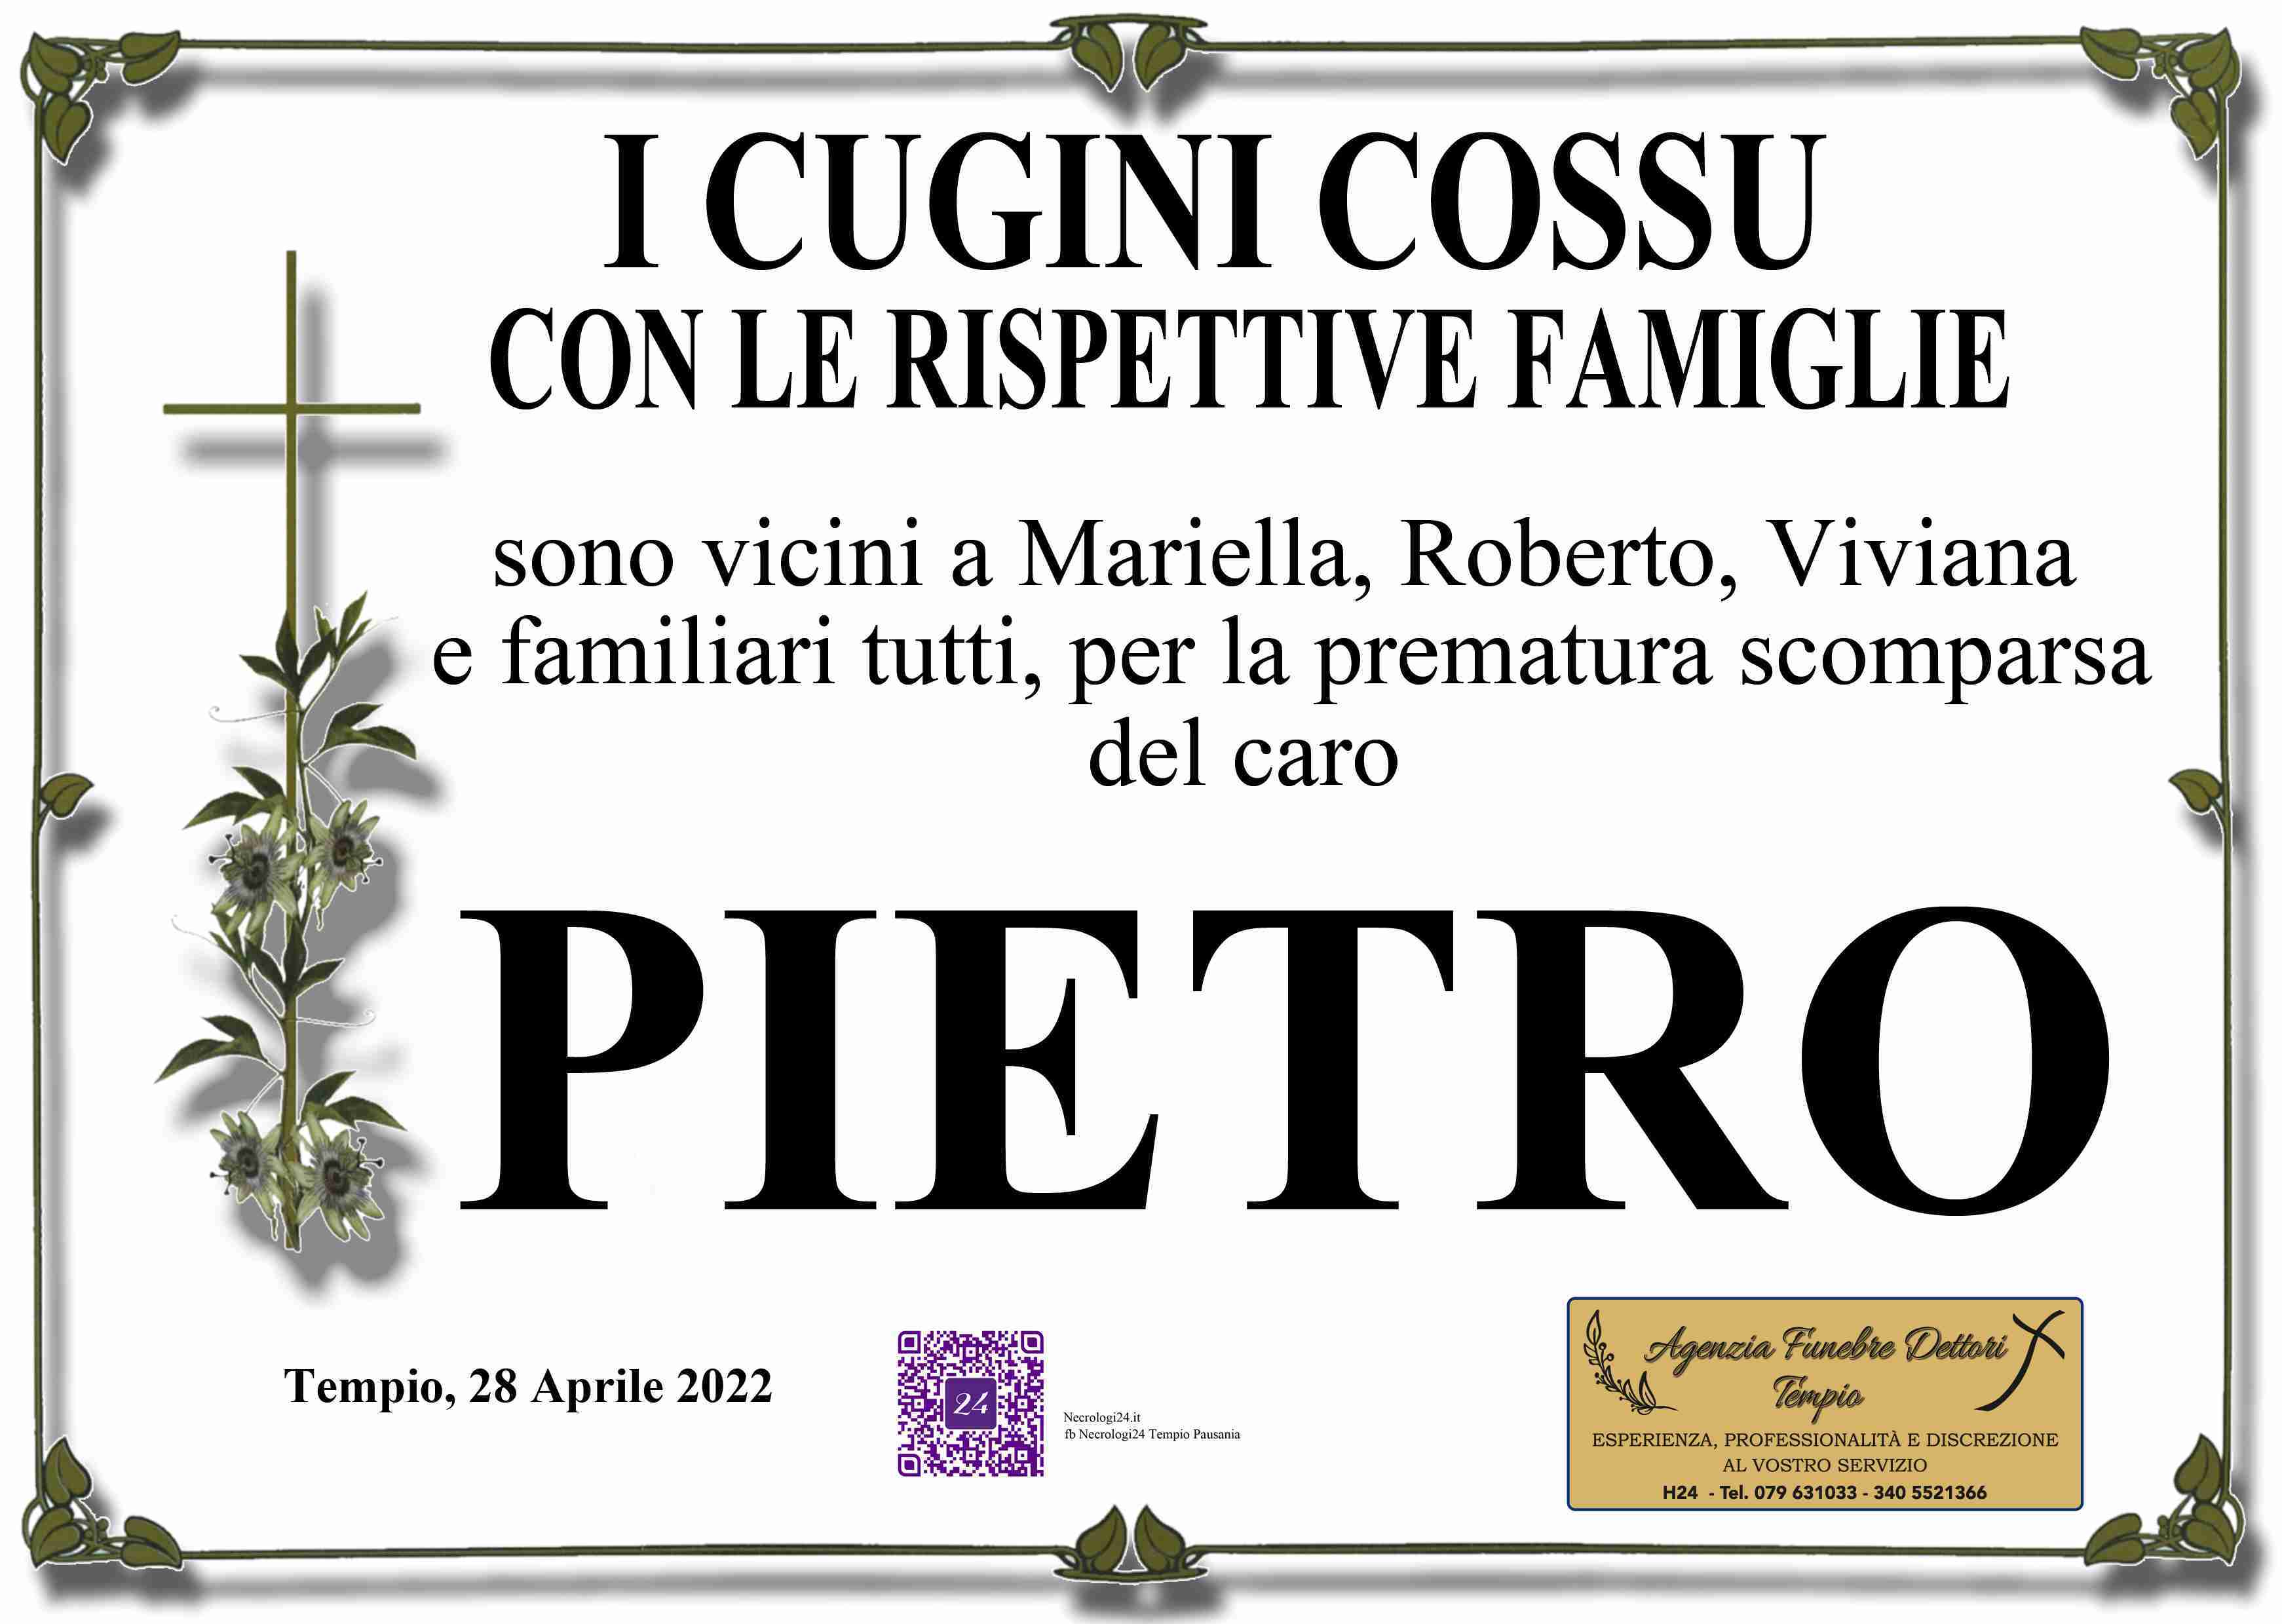 Pietro Cossu